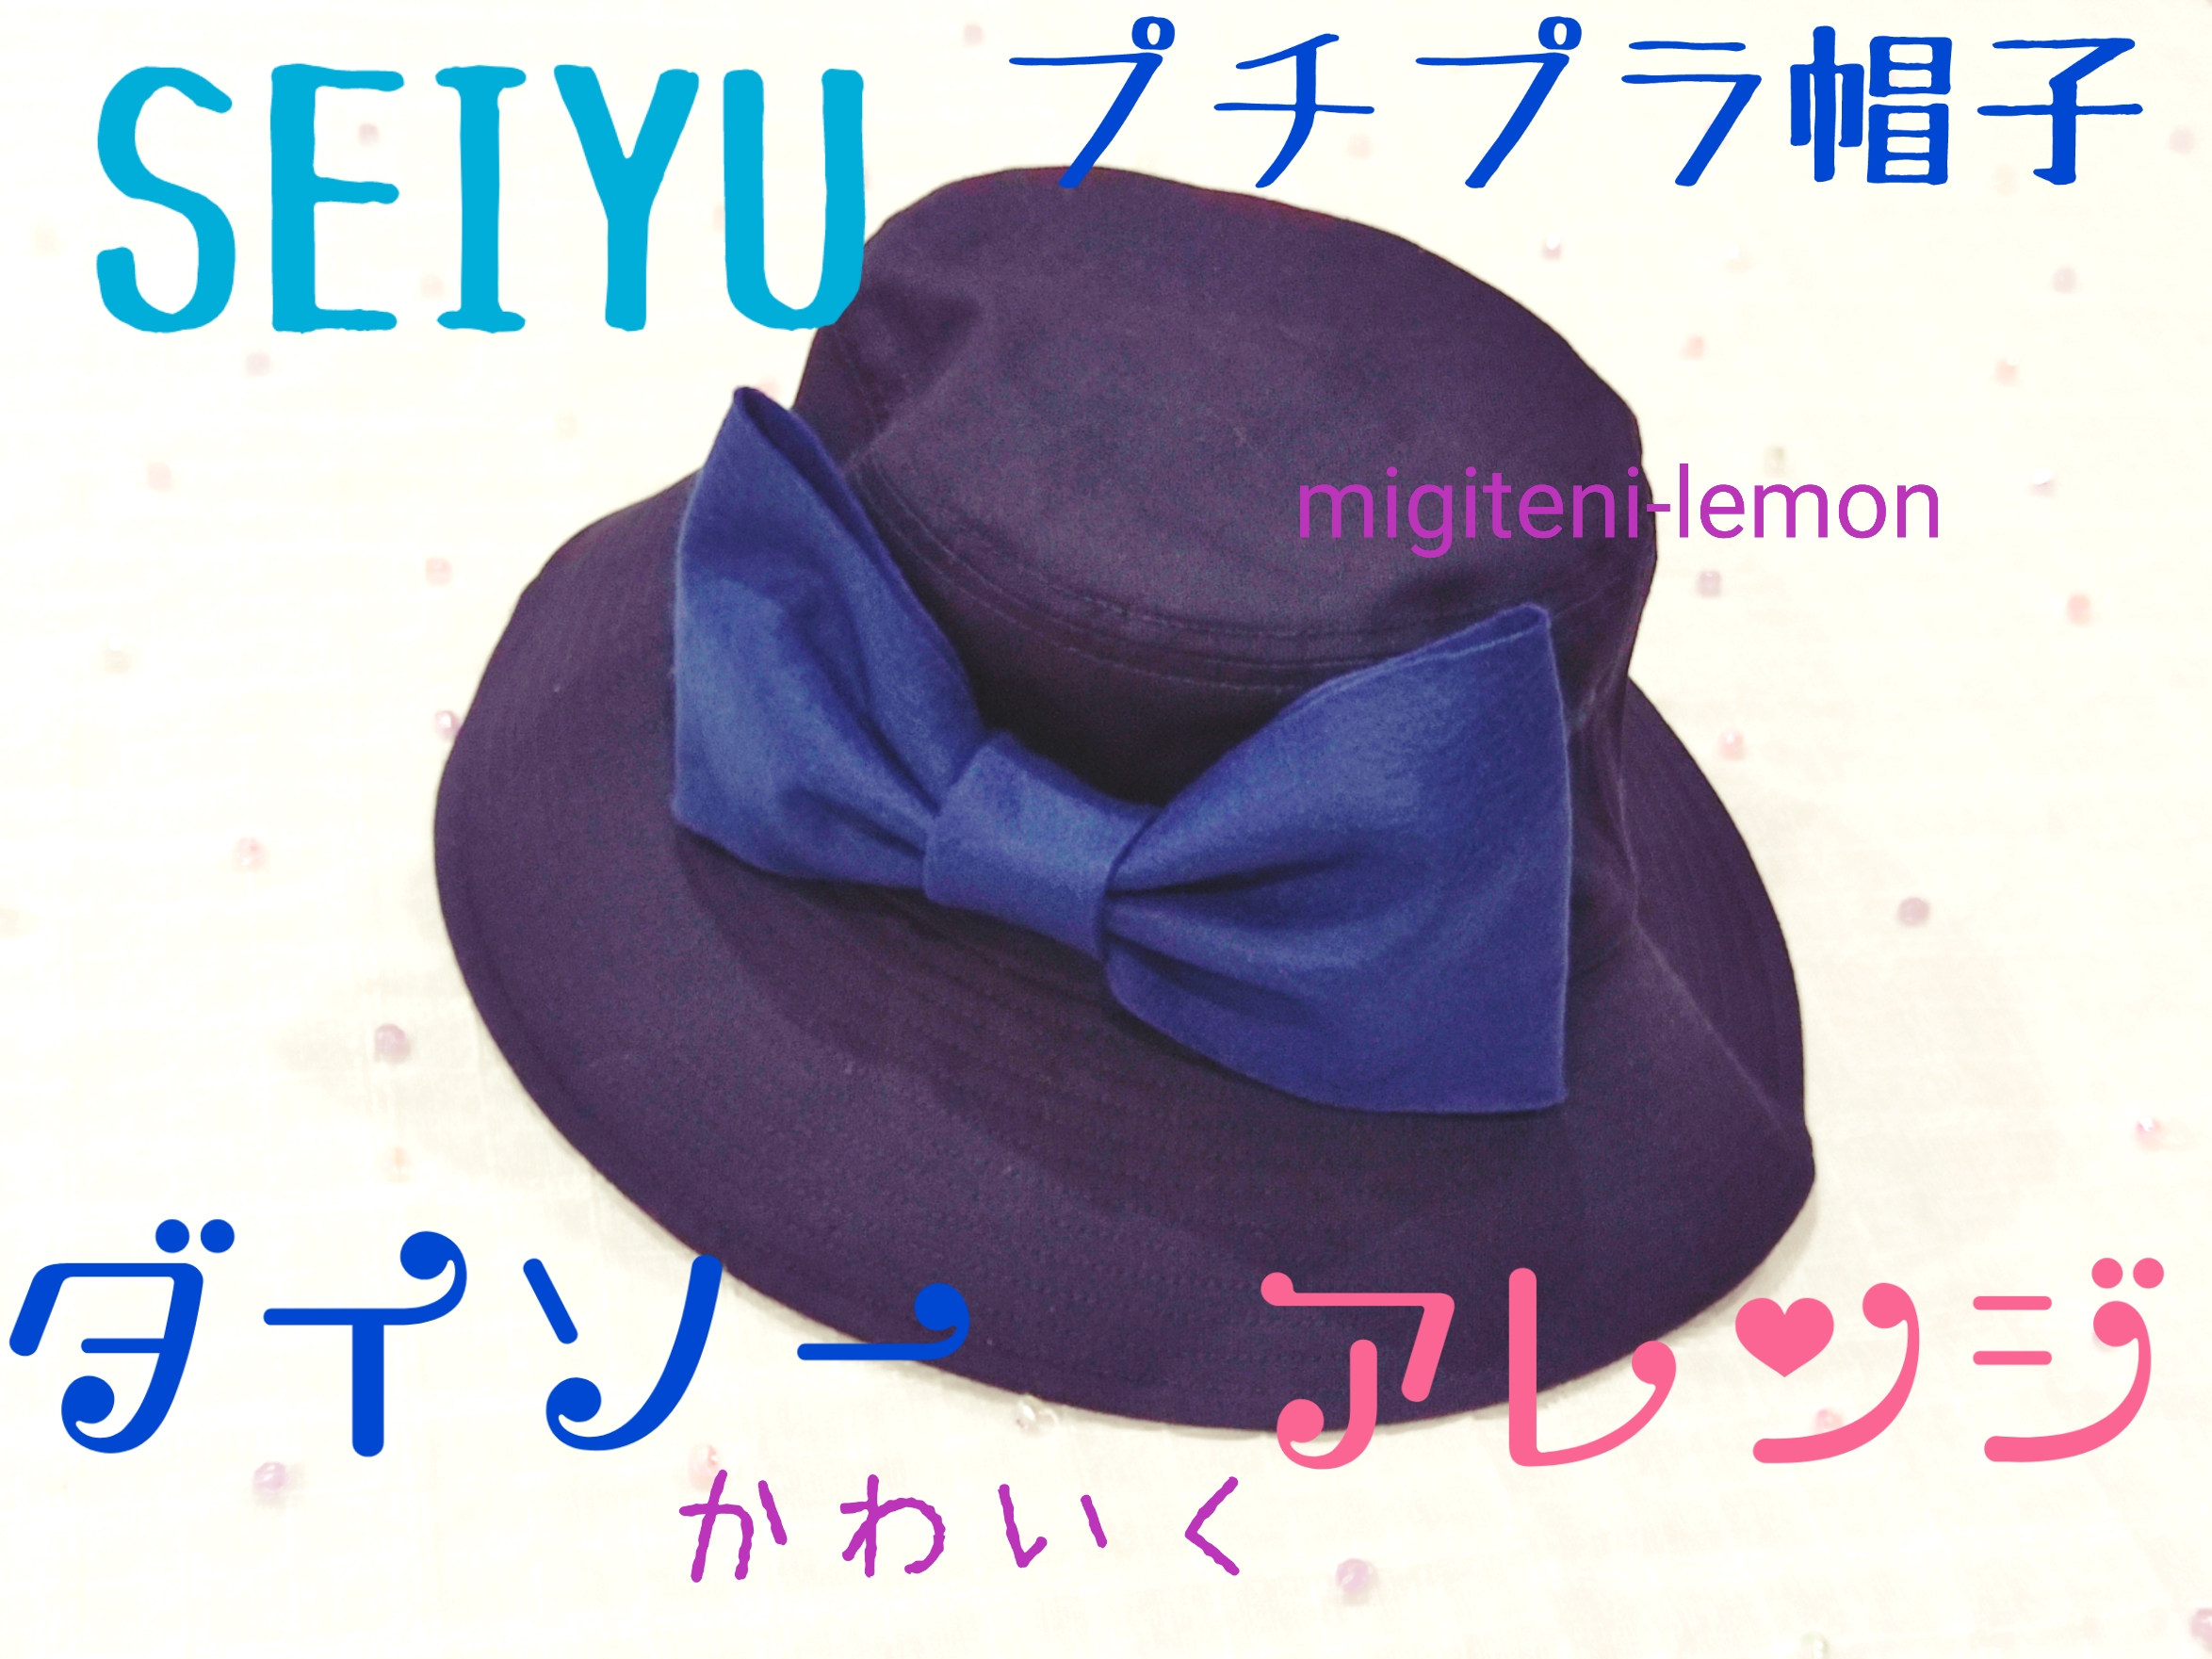 百均で簡単リメイク 大きなリボン付き帽子 西友 Migiteni Lemon Com